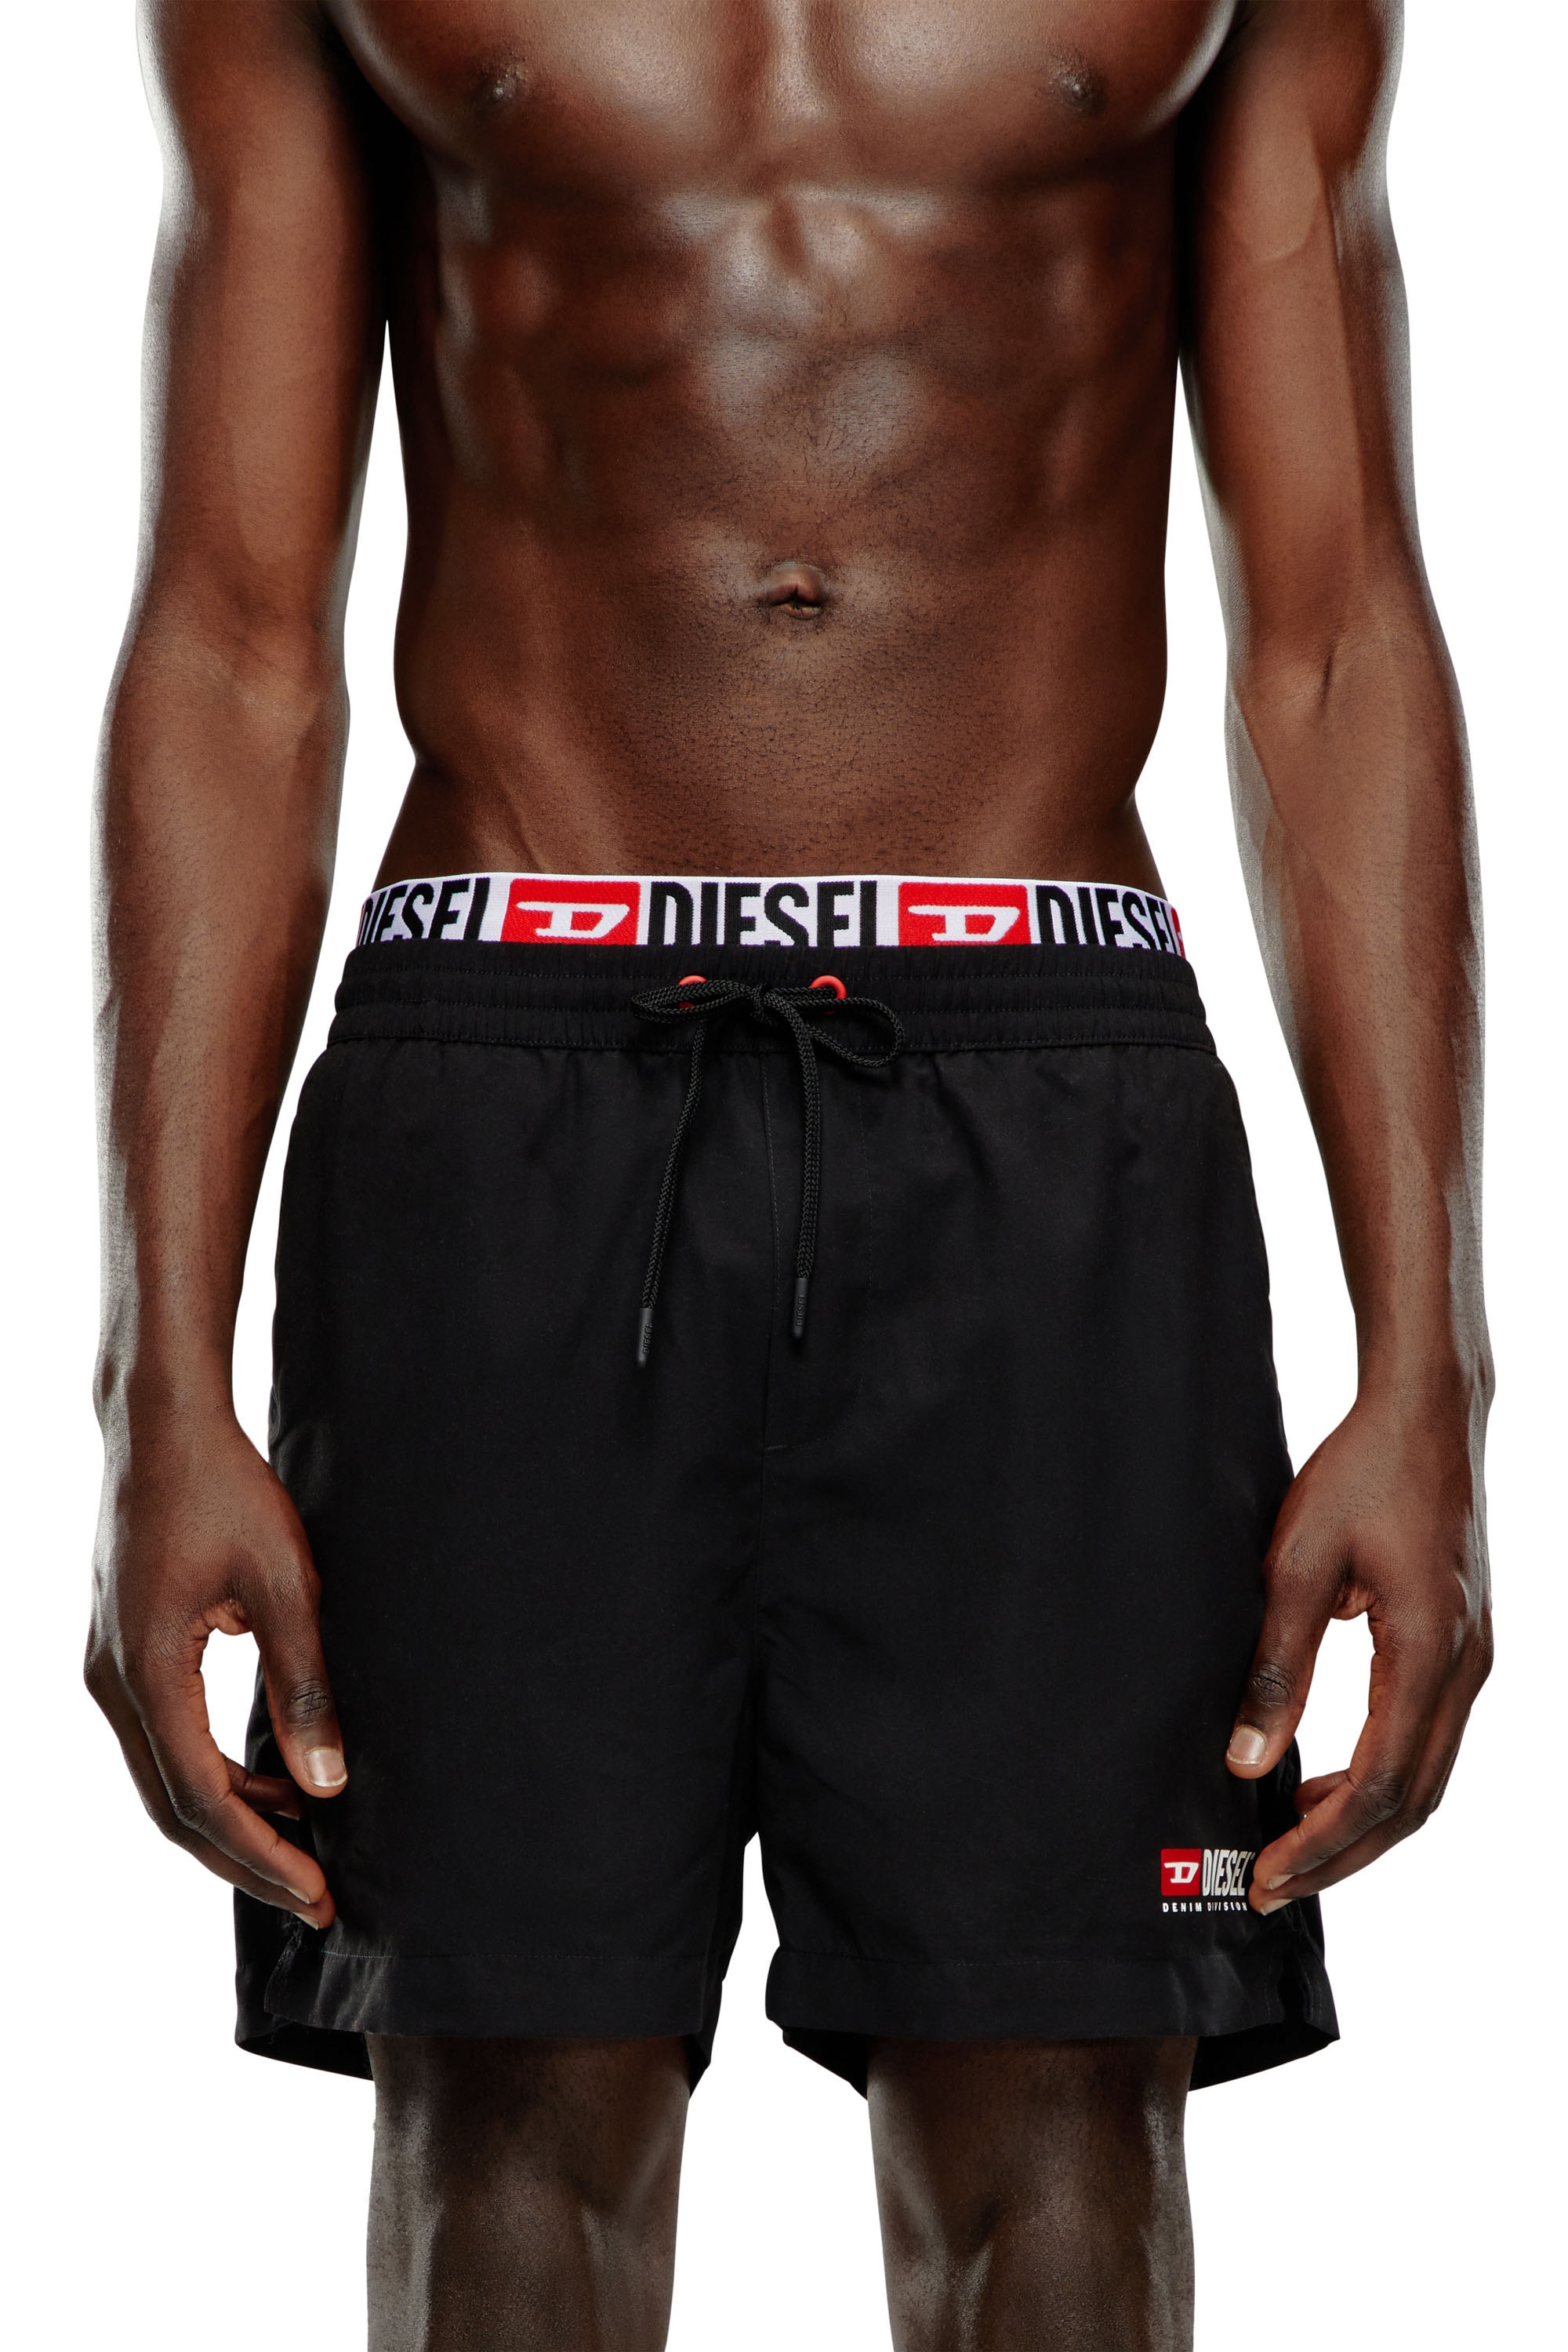 Diesel - BMBX-VISPER-41, Man Double-waist board shorts in Black - Image 2